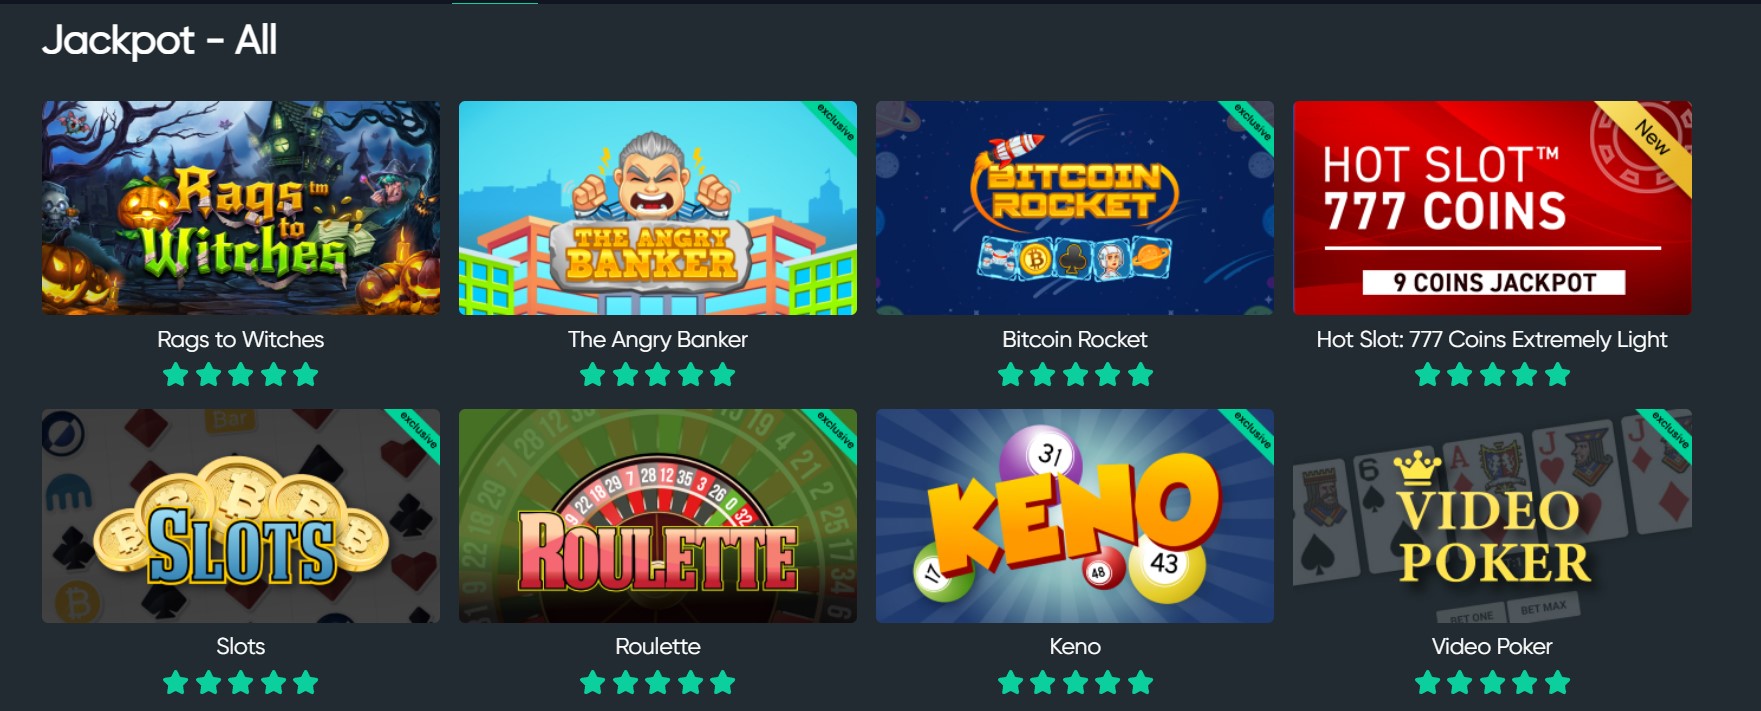 jogos de jackpot bitcoin.com